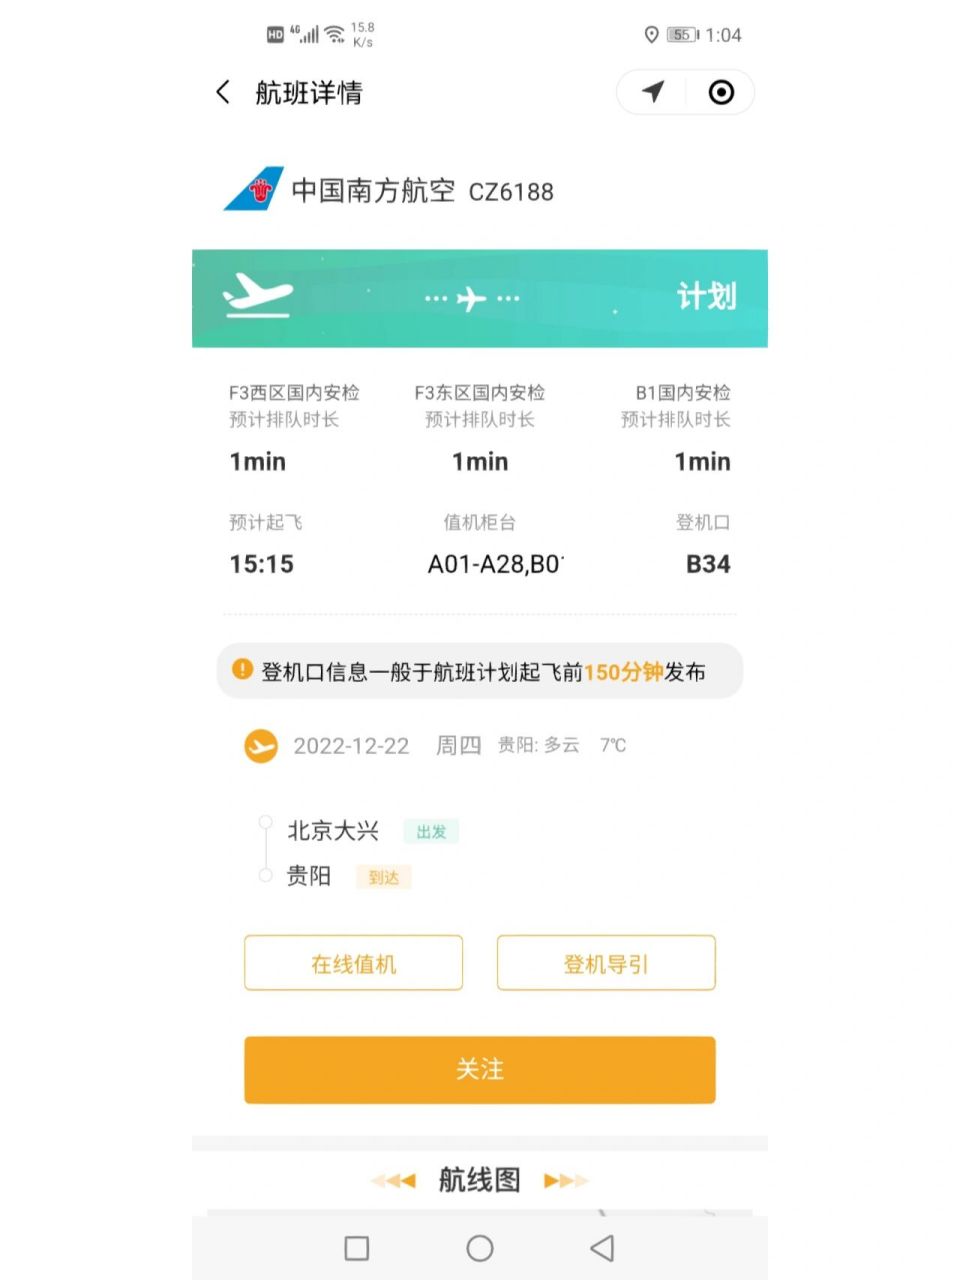 北京大兴机场登机流程91 买完机票以后,在手机上提前选自己想要的